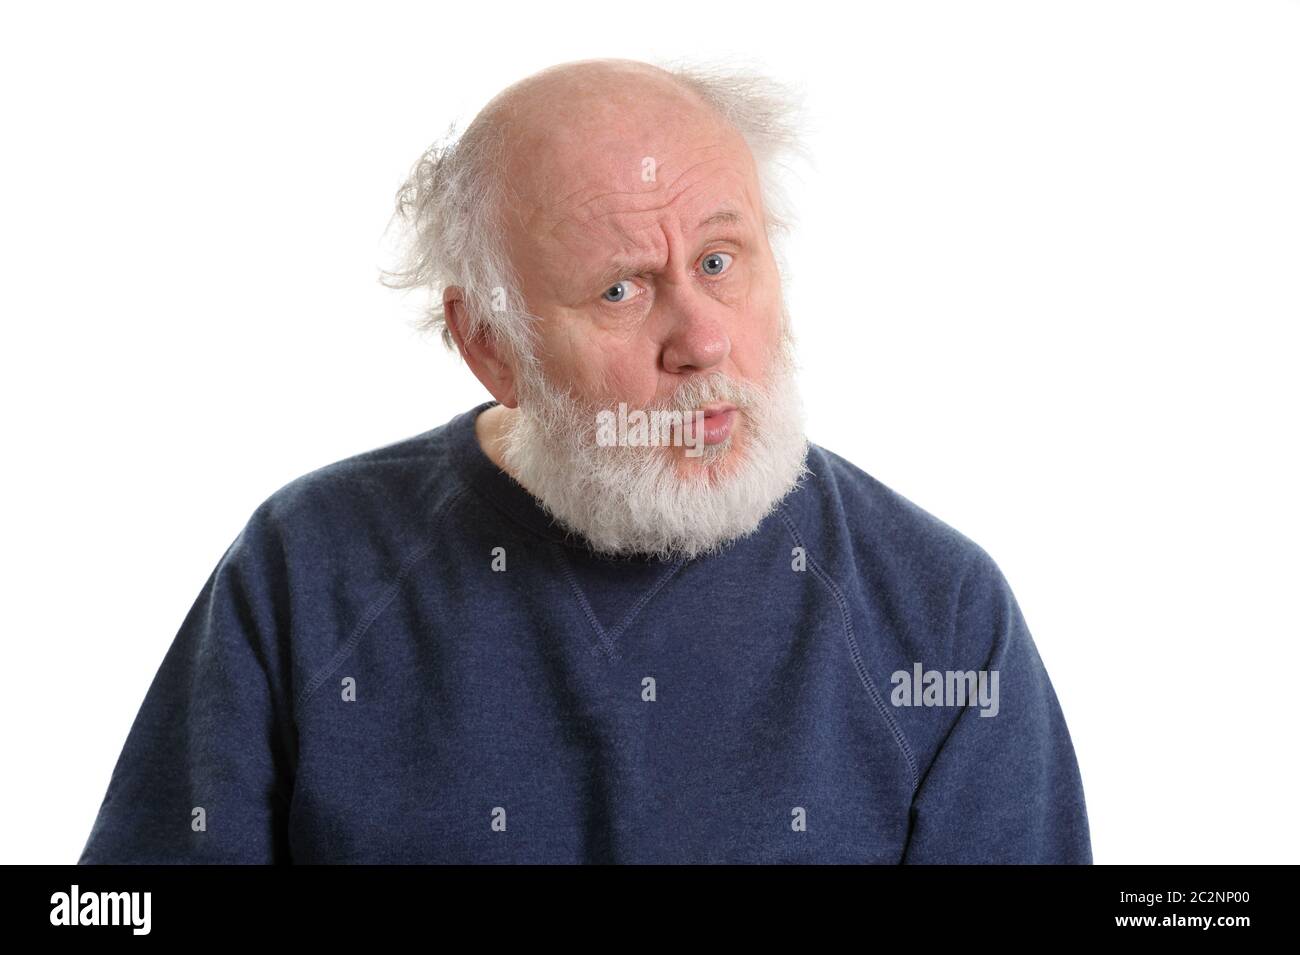 Puzzled senior man portrait isolated on white Stock Photo